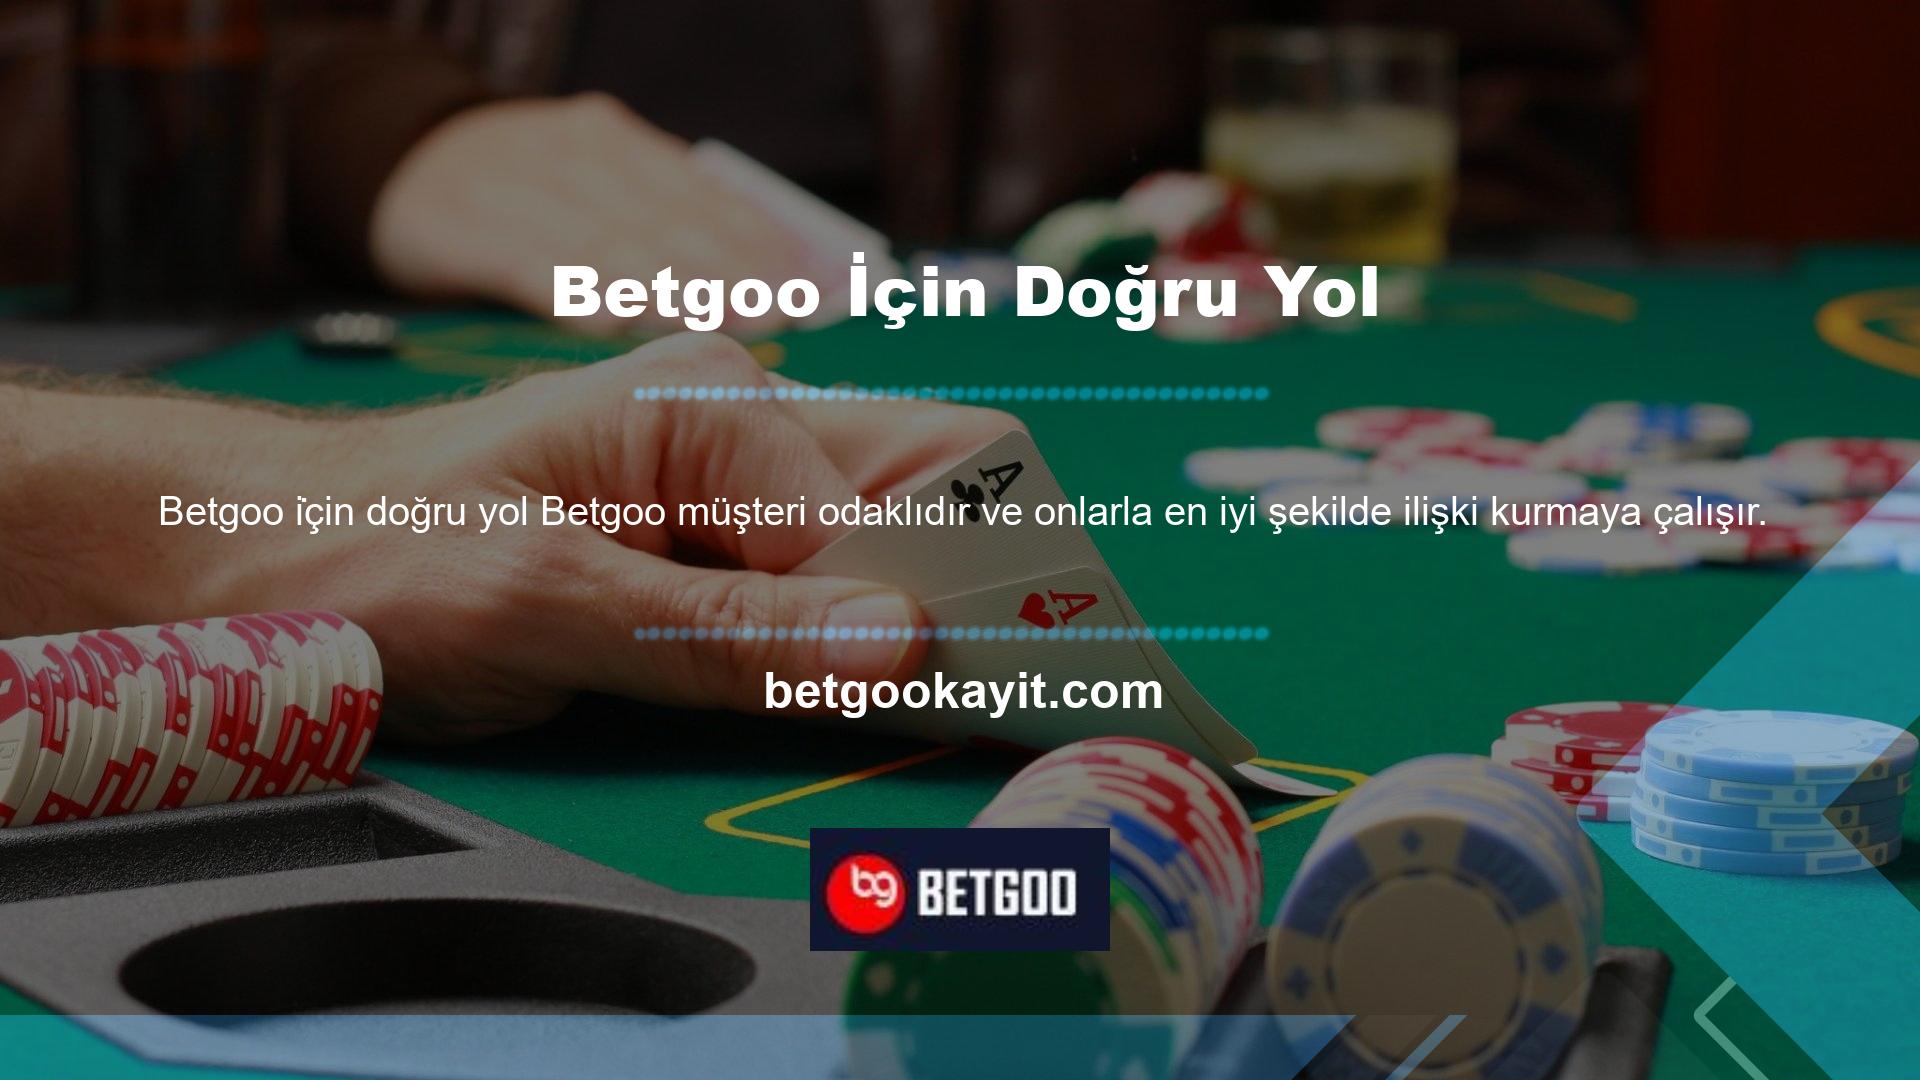 Avrupa lisanslı bir casino sitesi olan Betgoo yakında yatırım ve ticaret hizmetleri sunacak